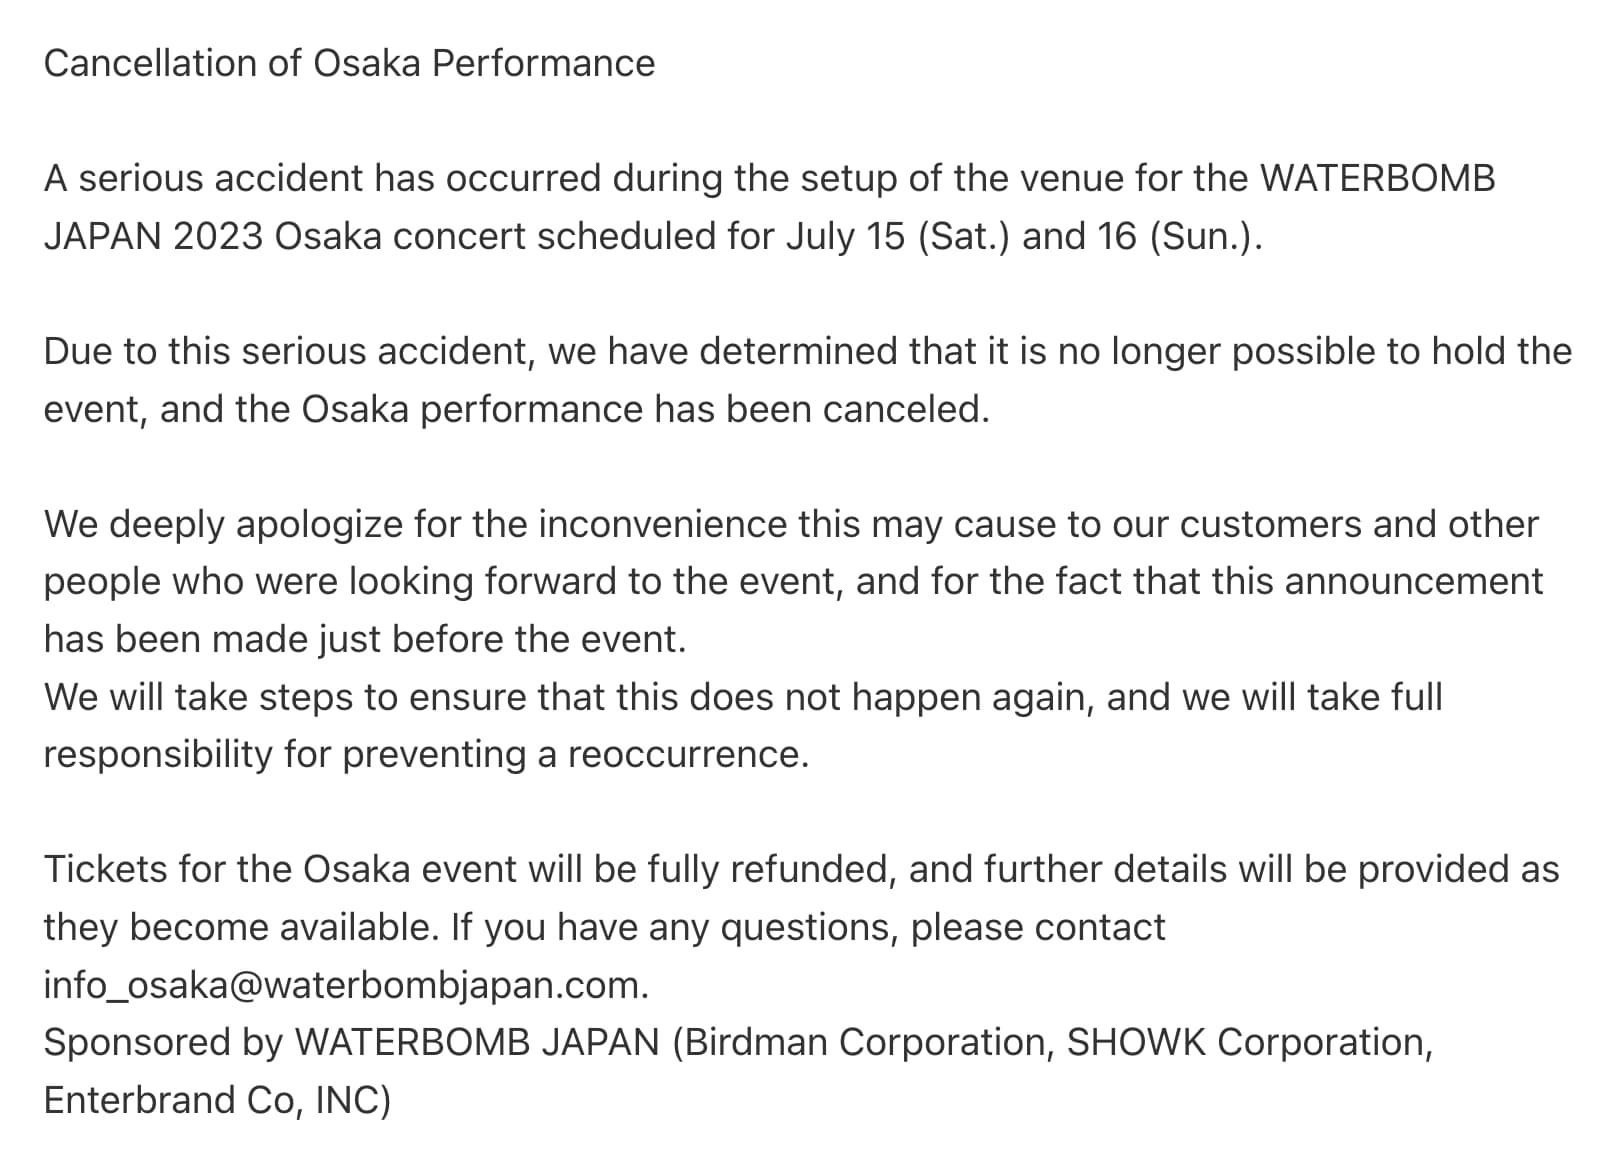 Waterbomb Nhật Bản hủy 2 đêm diễn vì tai nạn nghiêm trọng khiến nhân